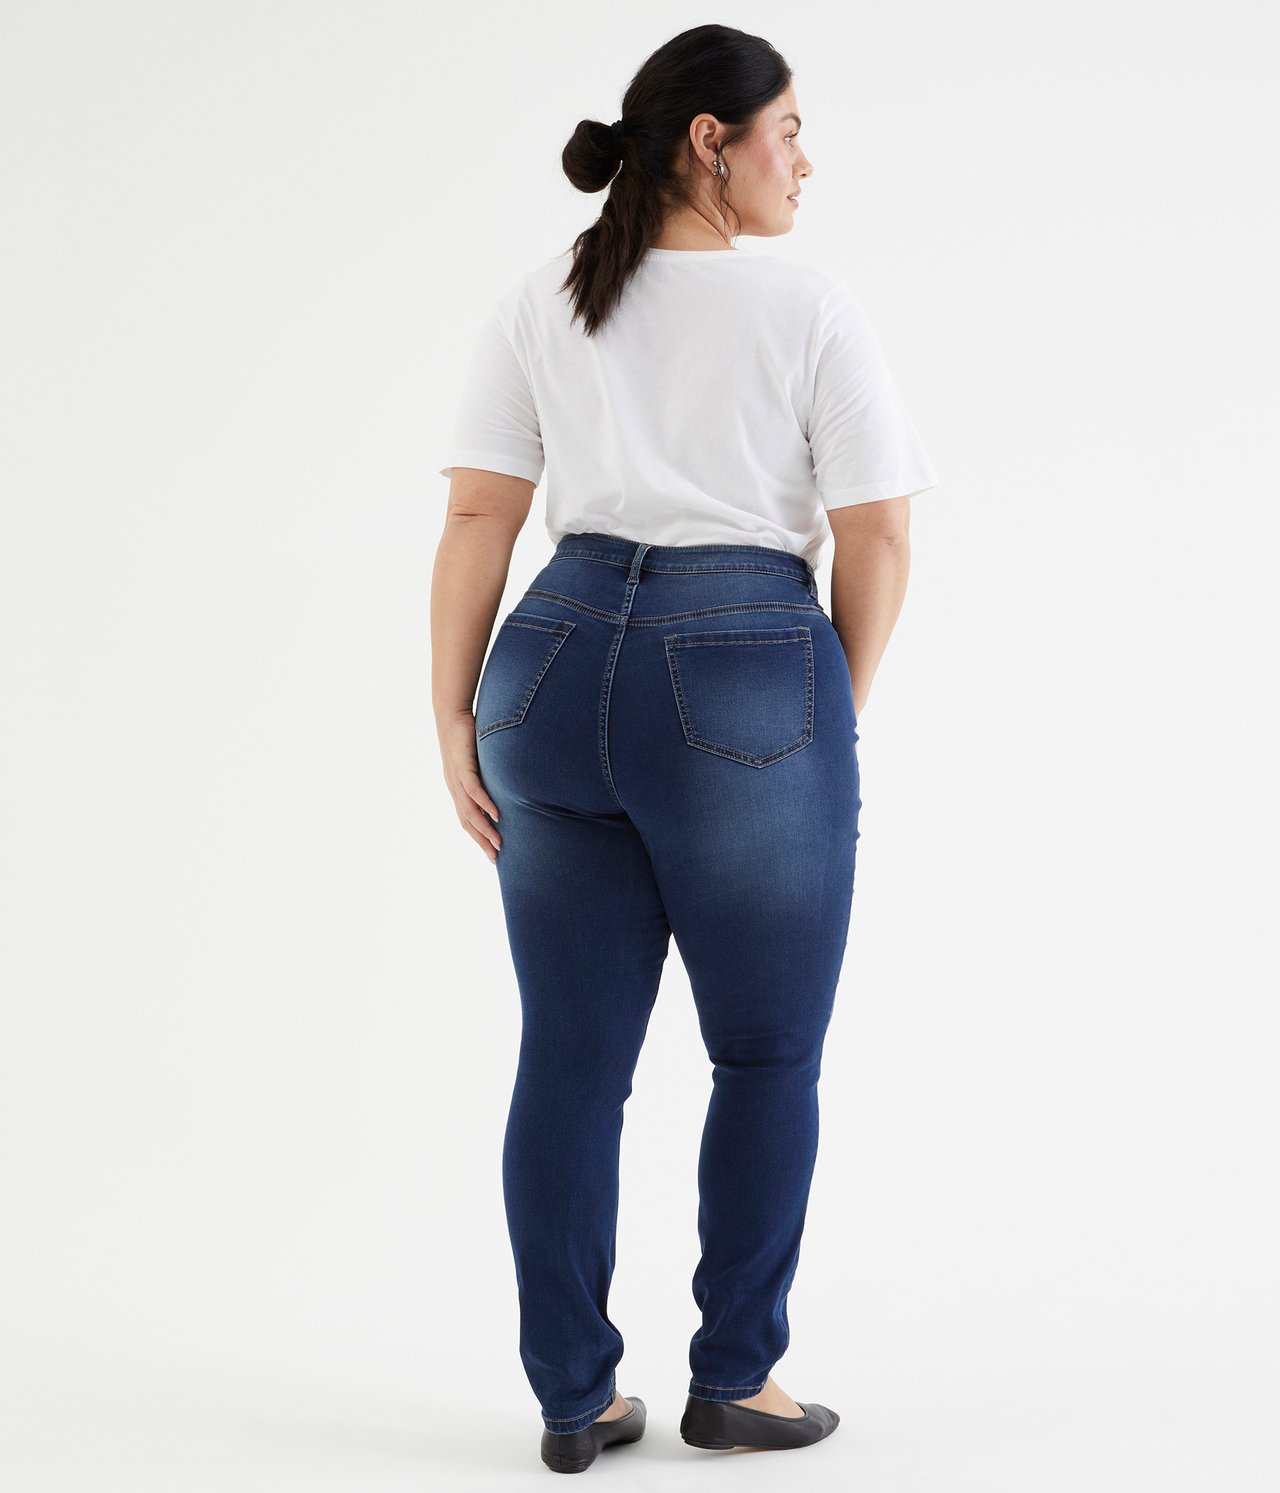 Ebba slim jeans extra long leg Mørk denim - null - 3